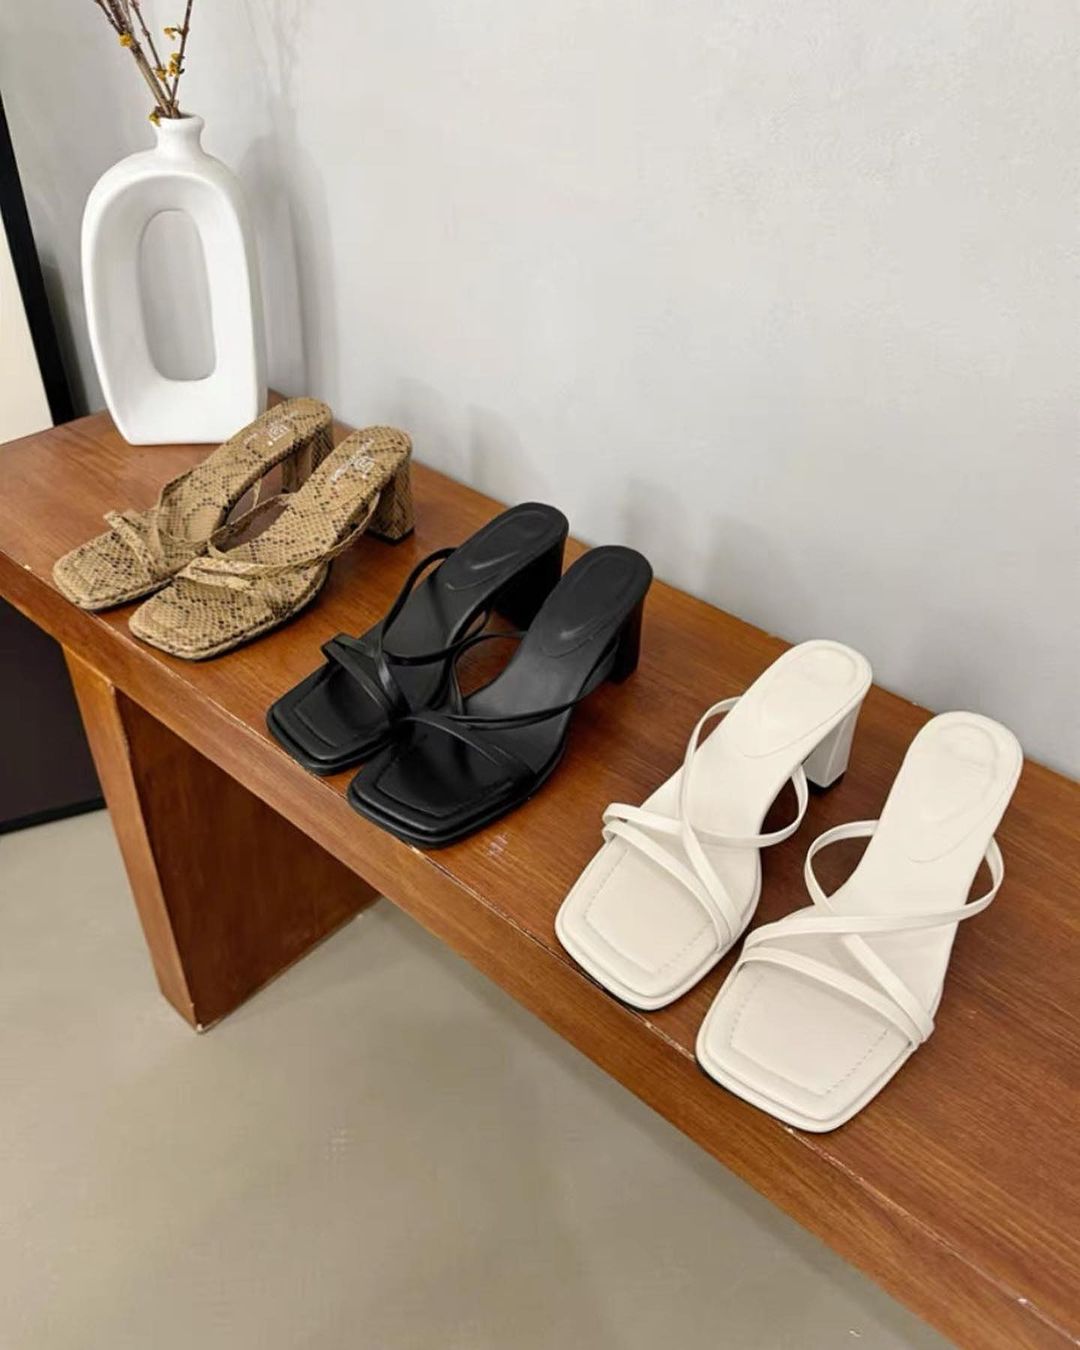 3 shop order giày dép Quảng Châu trên Instagram: Liên tục cập nhật mẫu hot, giá thành cực “yêu thương”- Ảnh 3.